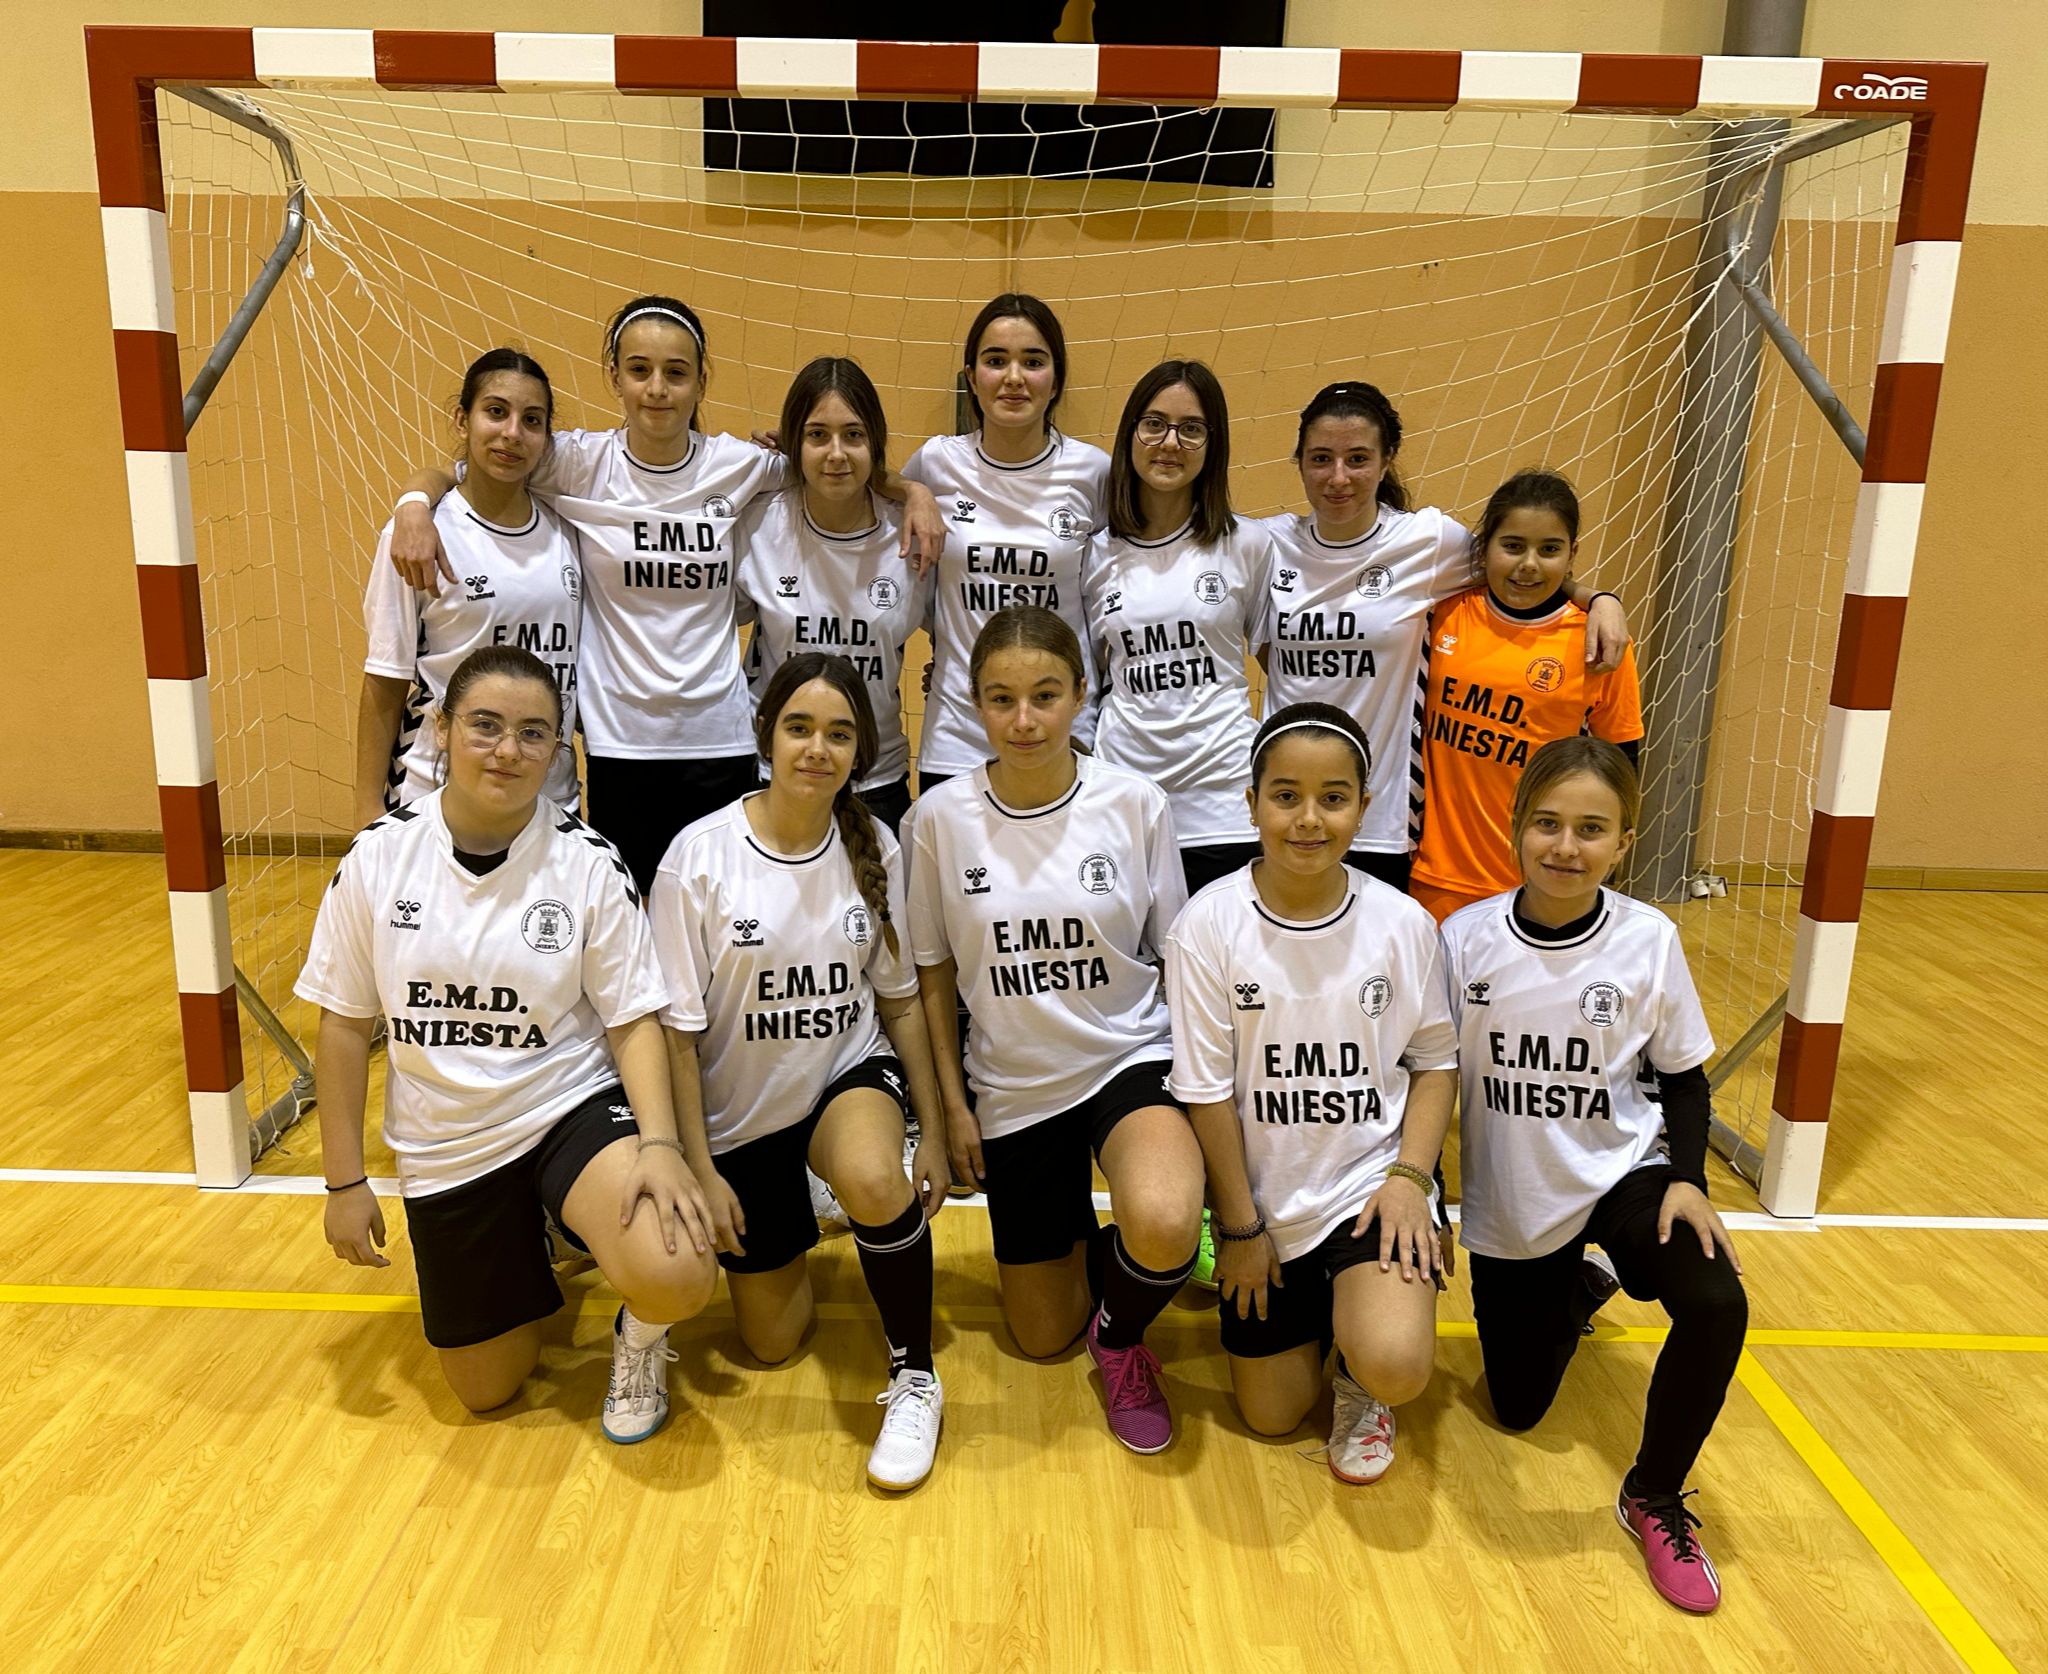 Conoce los resultados de la 12ª Jornada de Fútbol y Fútbol Sala del Deporte Escolar en la provincia de Cuenca